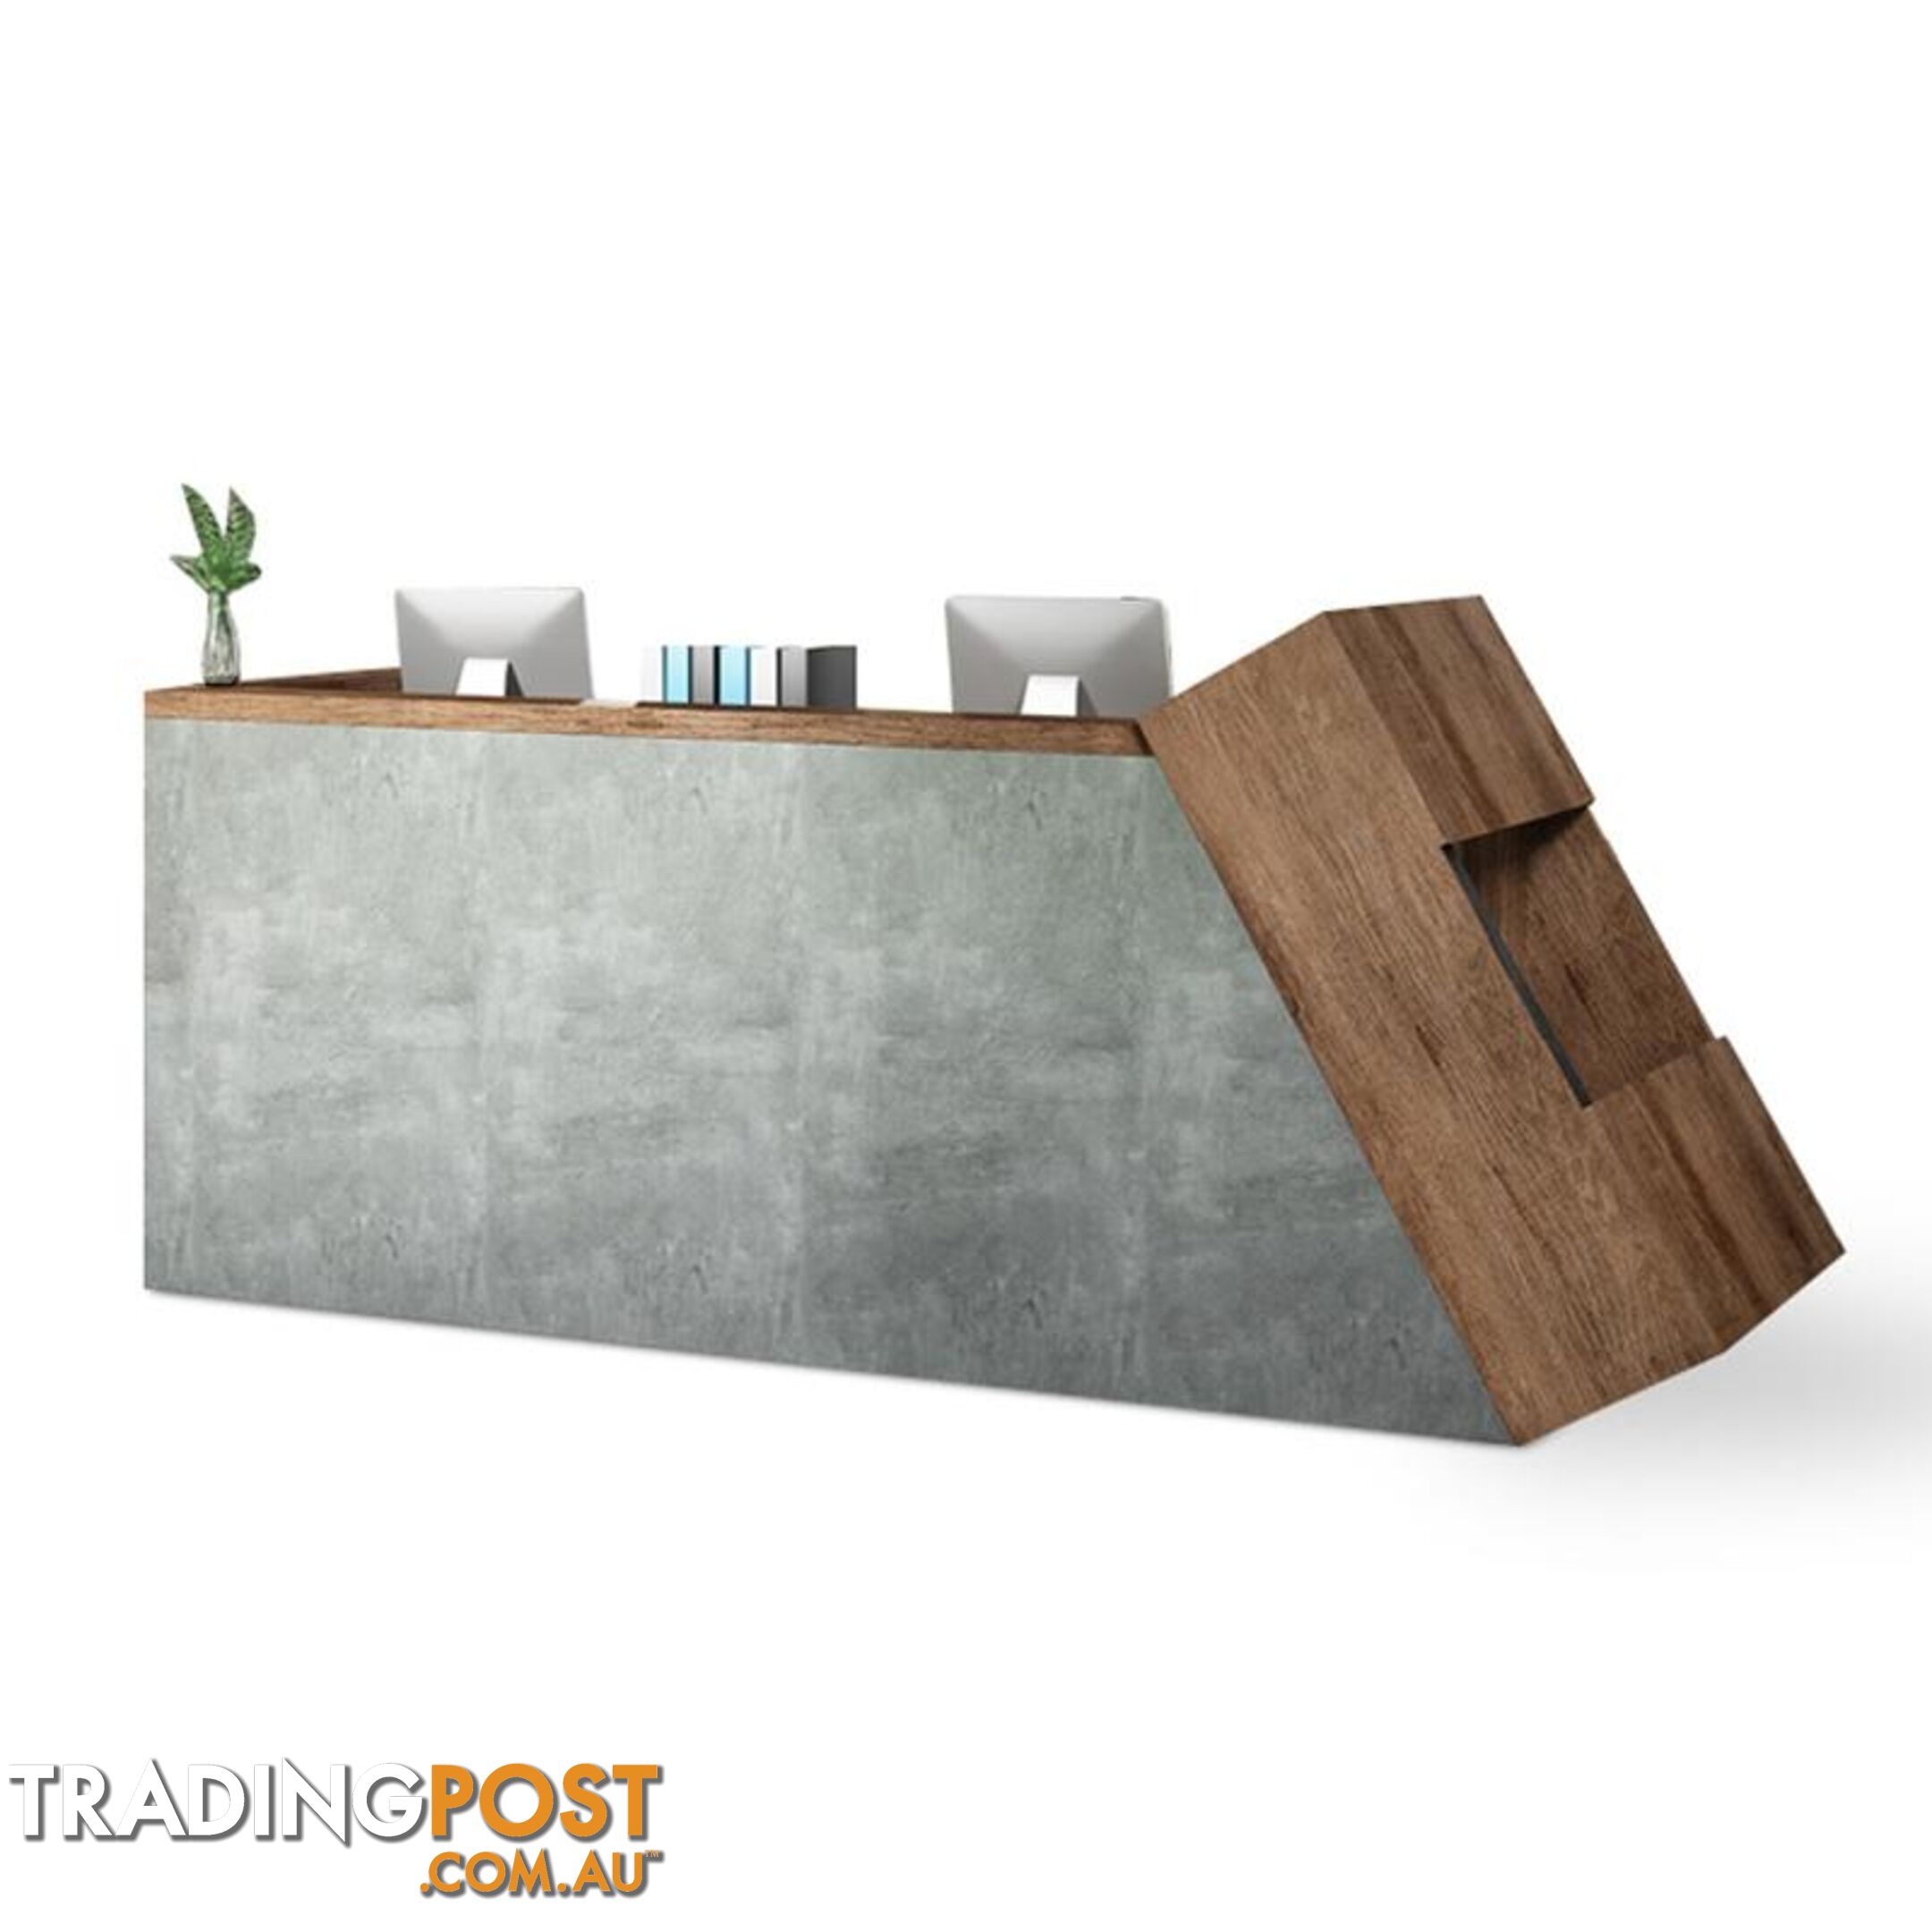 QUADE Reception Desk Left Panel 2.0M - Brown & Concrete Color - WF-RT002-L - 9334719004471